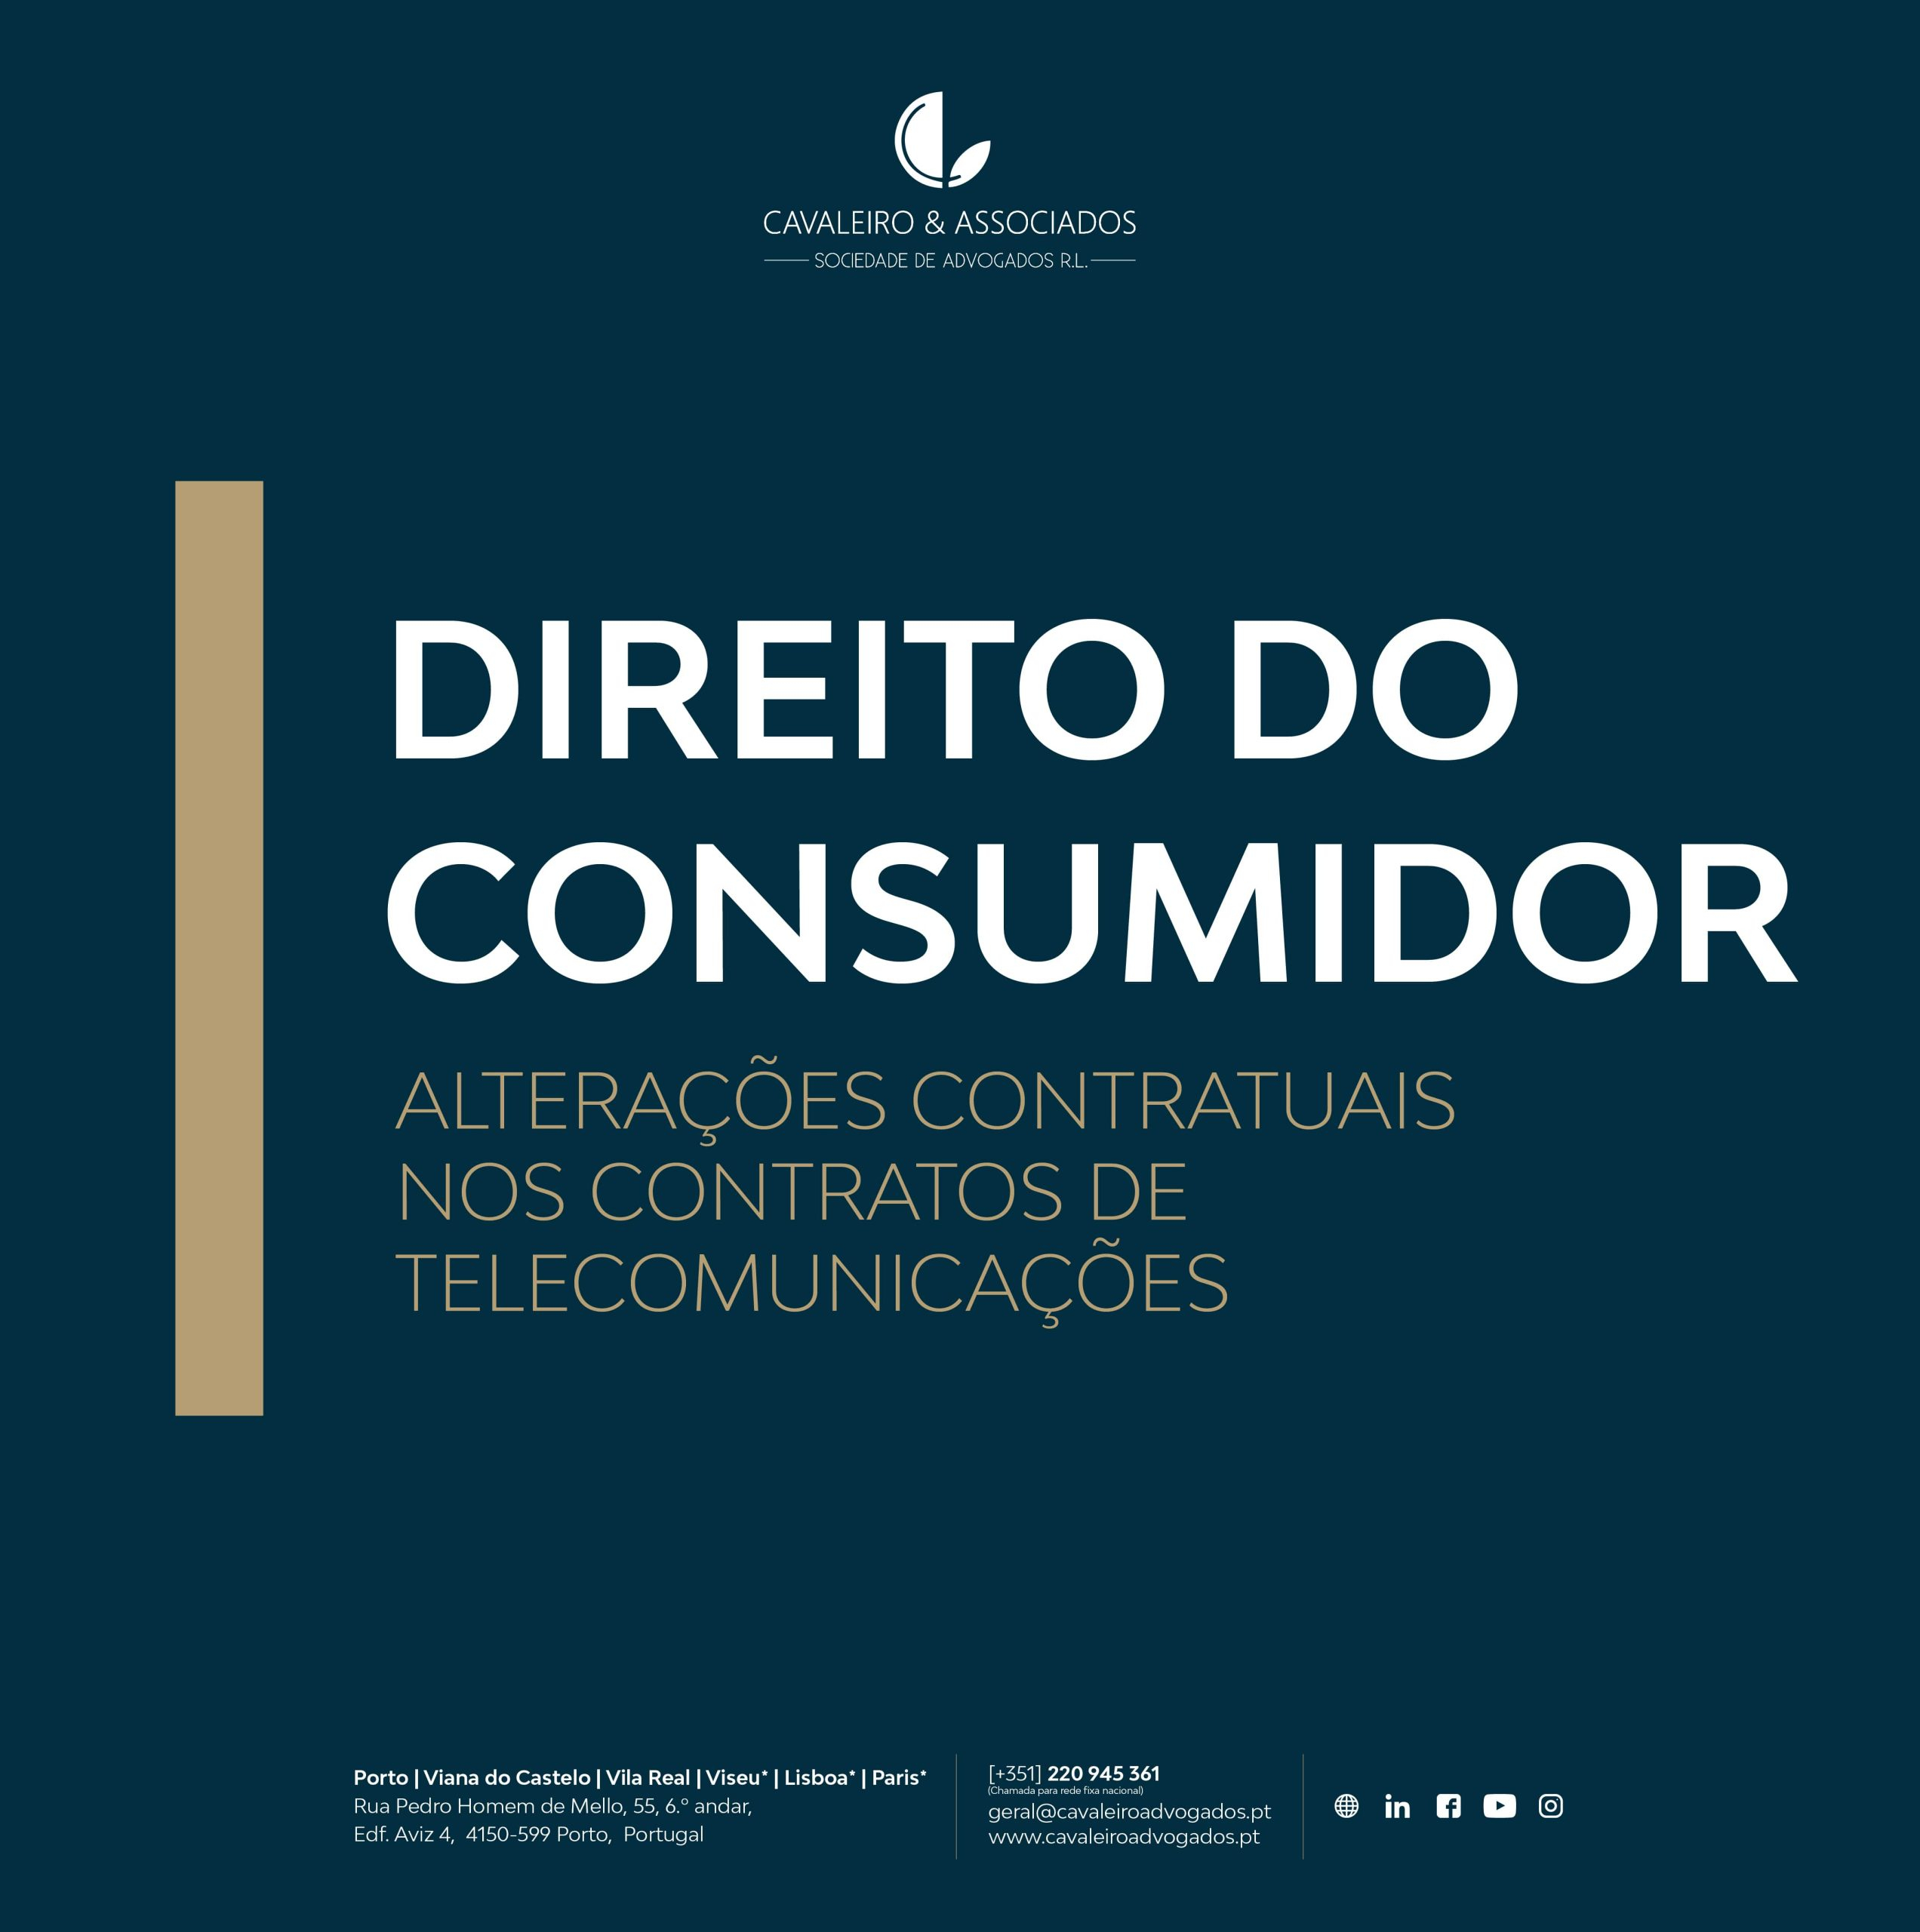 DIREITO DO CONSUMIDOR: Alterações contratuais nos contratos de telecomunicações